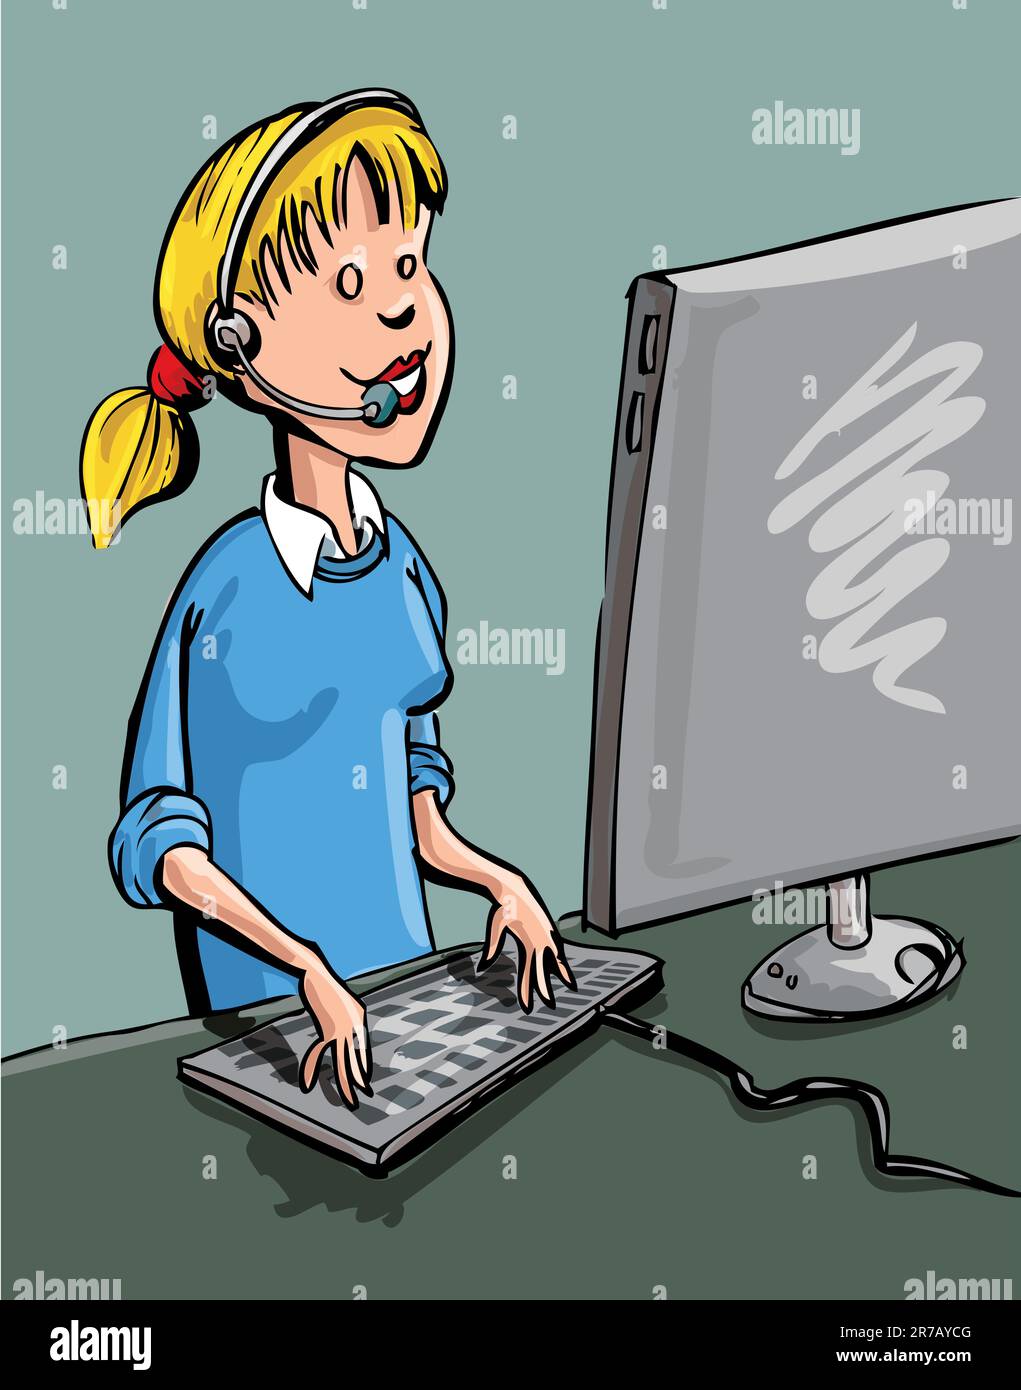 Un centre d'appel au travailleur qu'il. Elle a un écran d'ordinateur a l'avant de son casque et a et le porte-parole Illustration de Vecteur